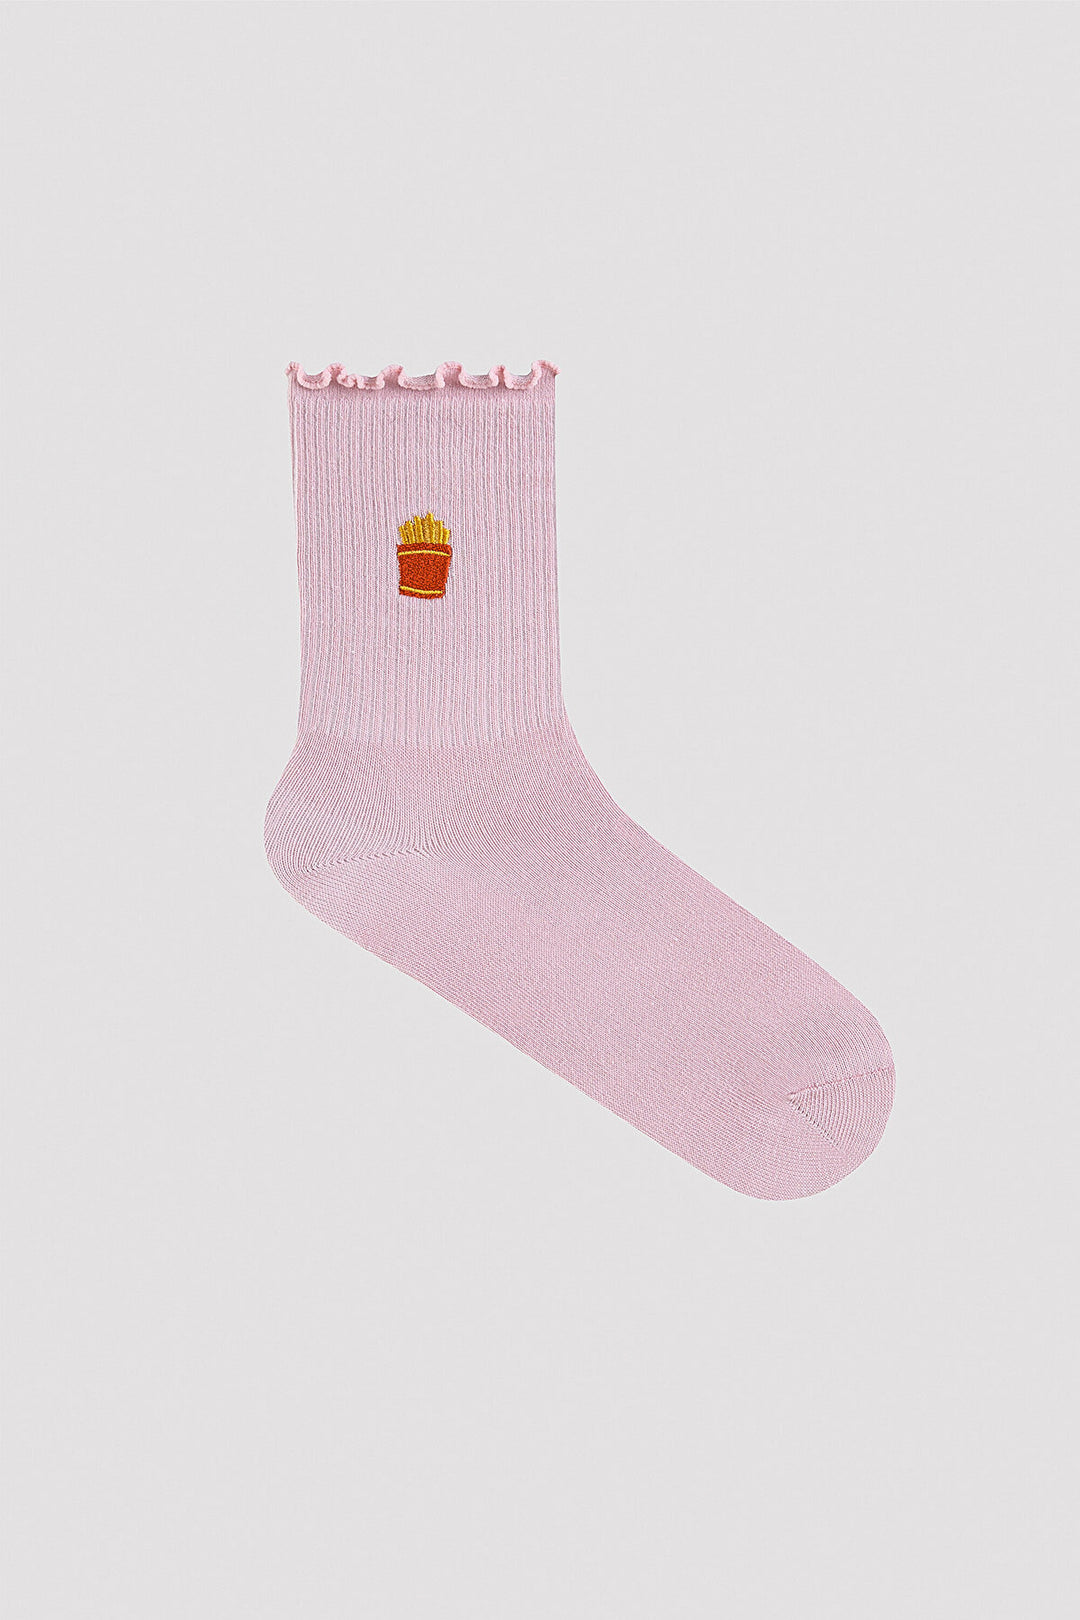 Rear Tab 2in1 Liner Socks – HMIC Kuwait